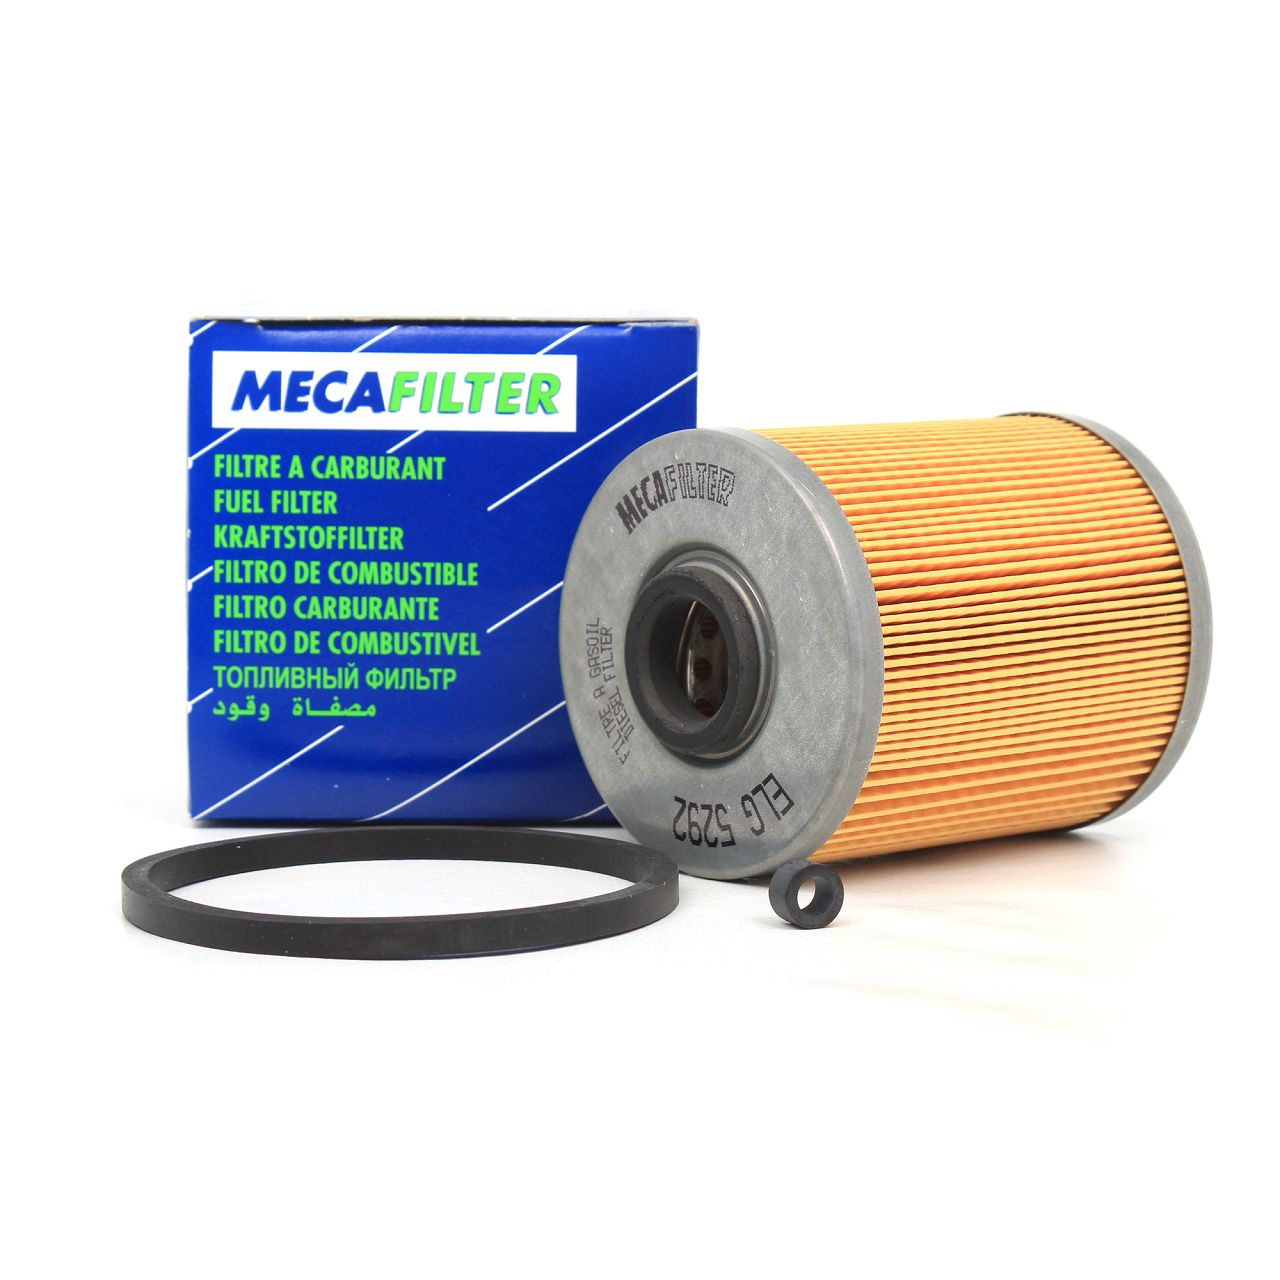 MECAFILTER Kraftstofffilter Dieselfilter für RENAULT TRAFIC MASTER 1.9-2.5 dCi